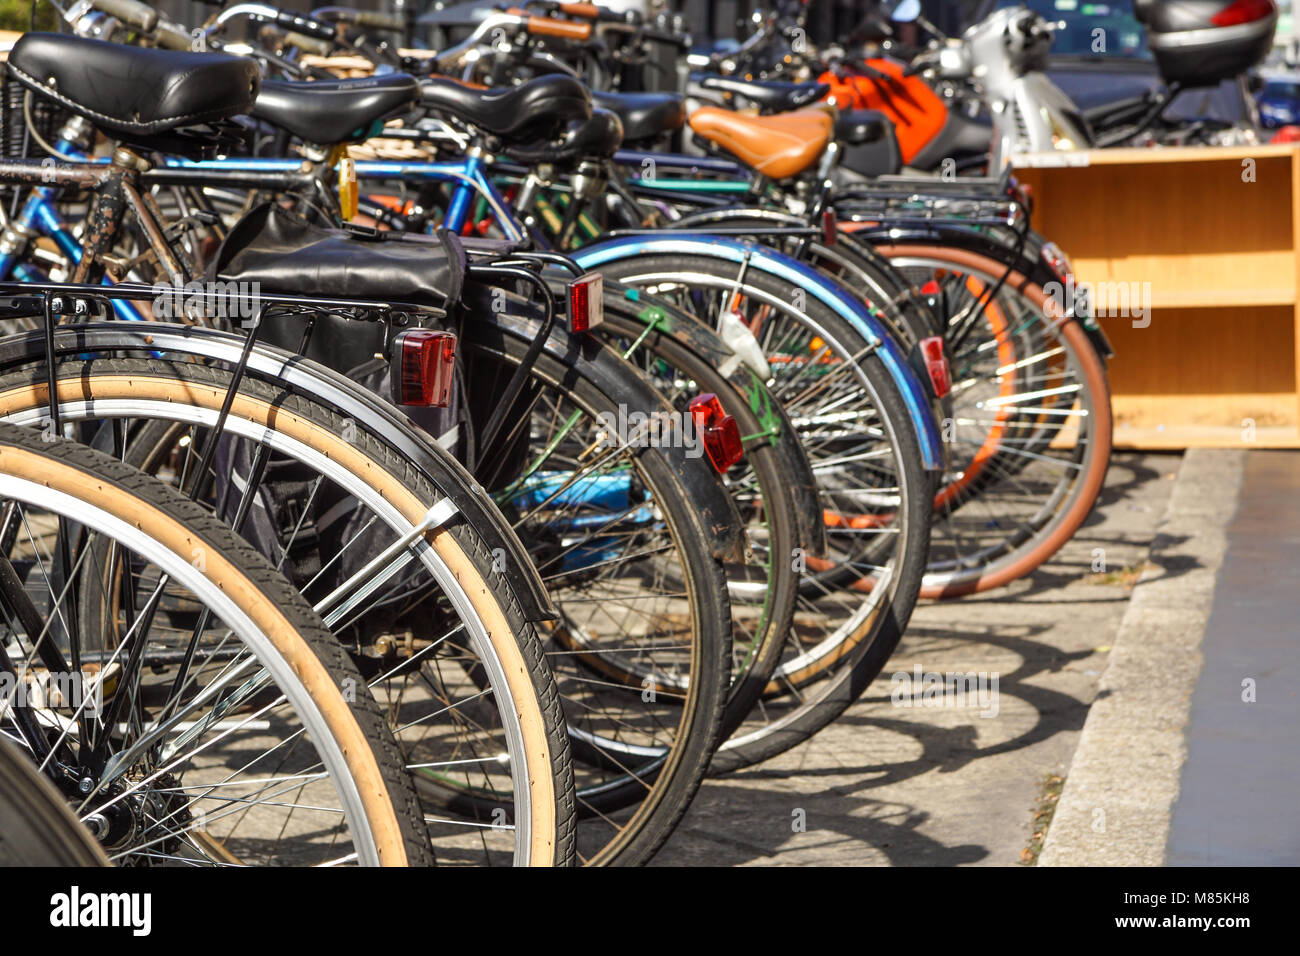 Rangée de vélos garés dans une ville pavée.Selective focus sur la première roue Banque D'Images